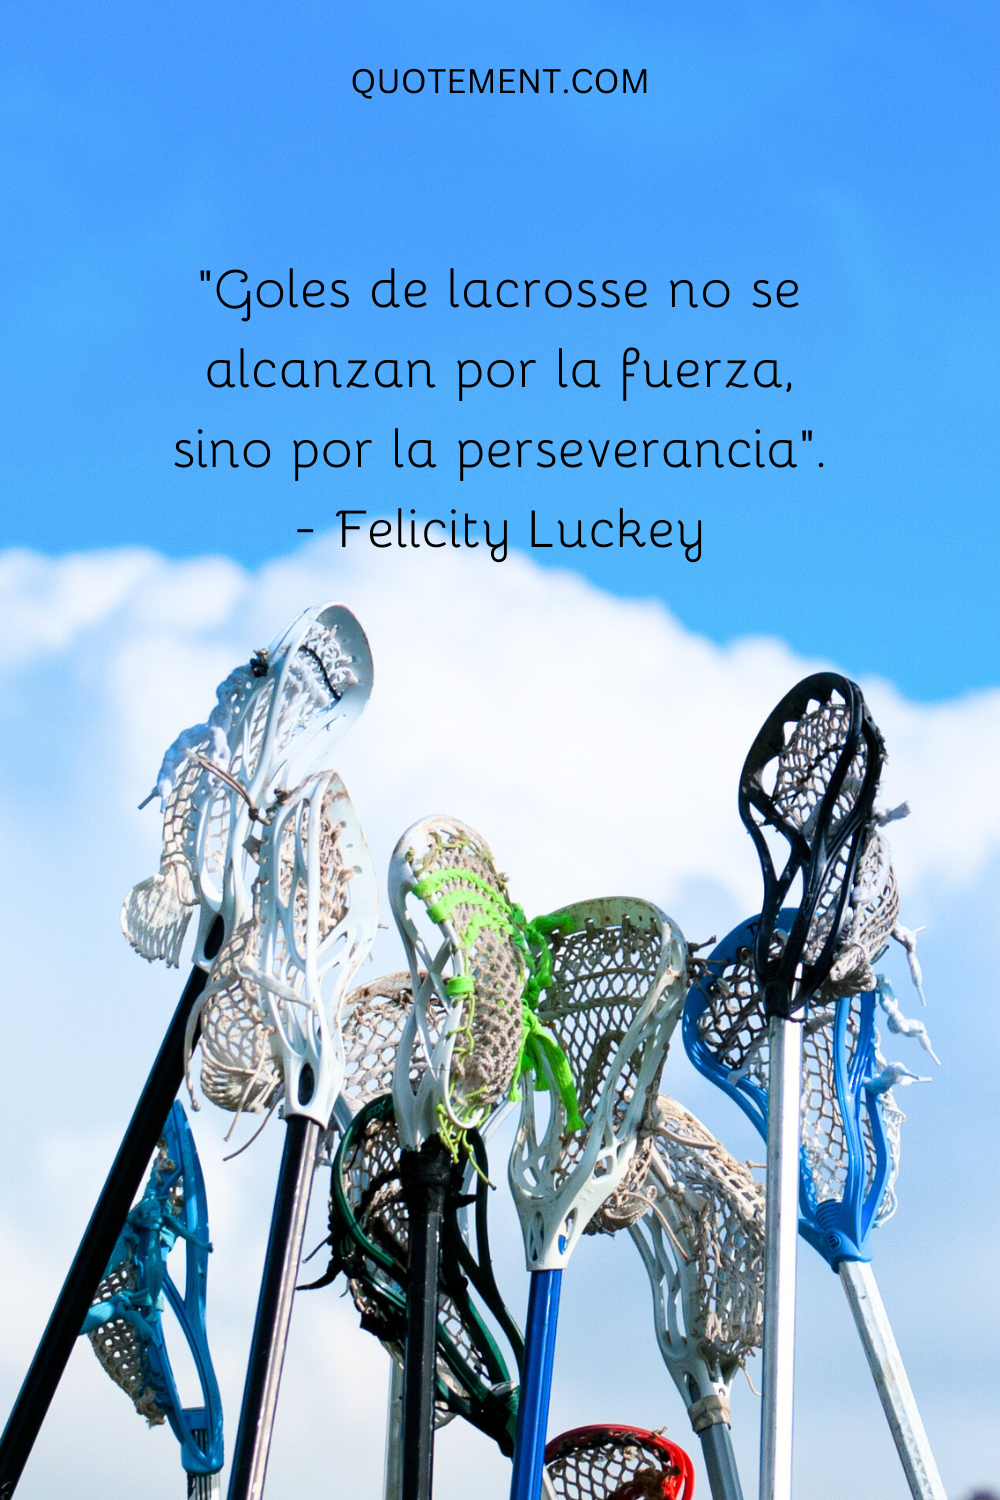 "Los objetivos del lacrosse no se alcanzan con la fuerza, sino con la perseverancia". - Felicity Luckey